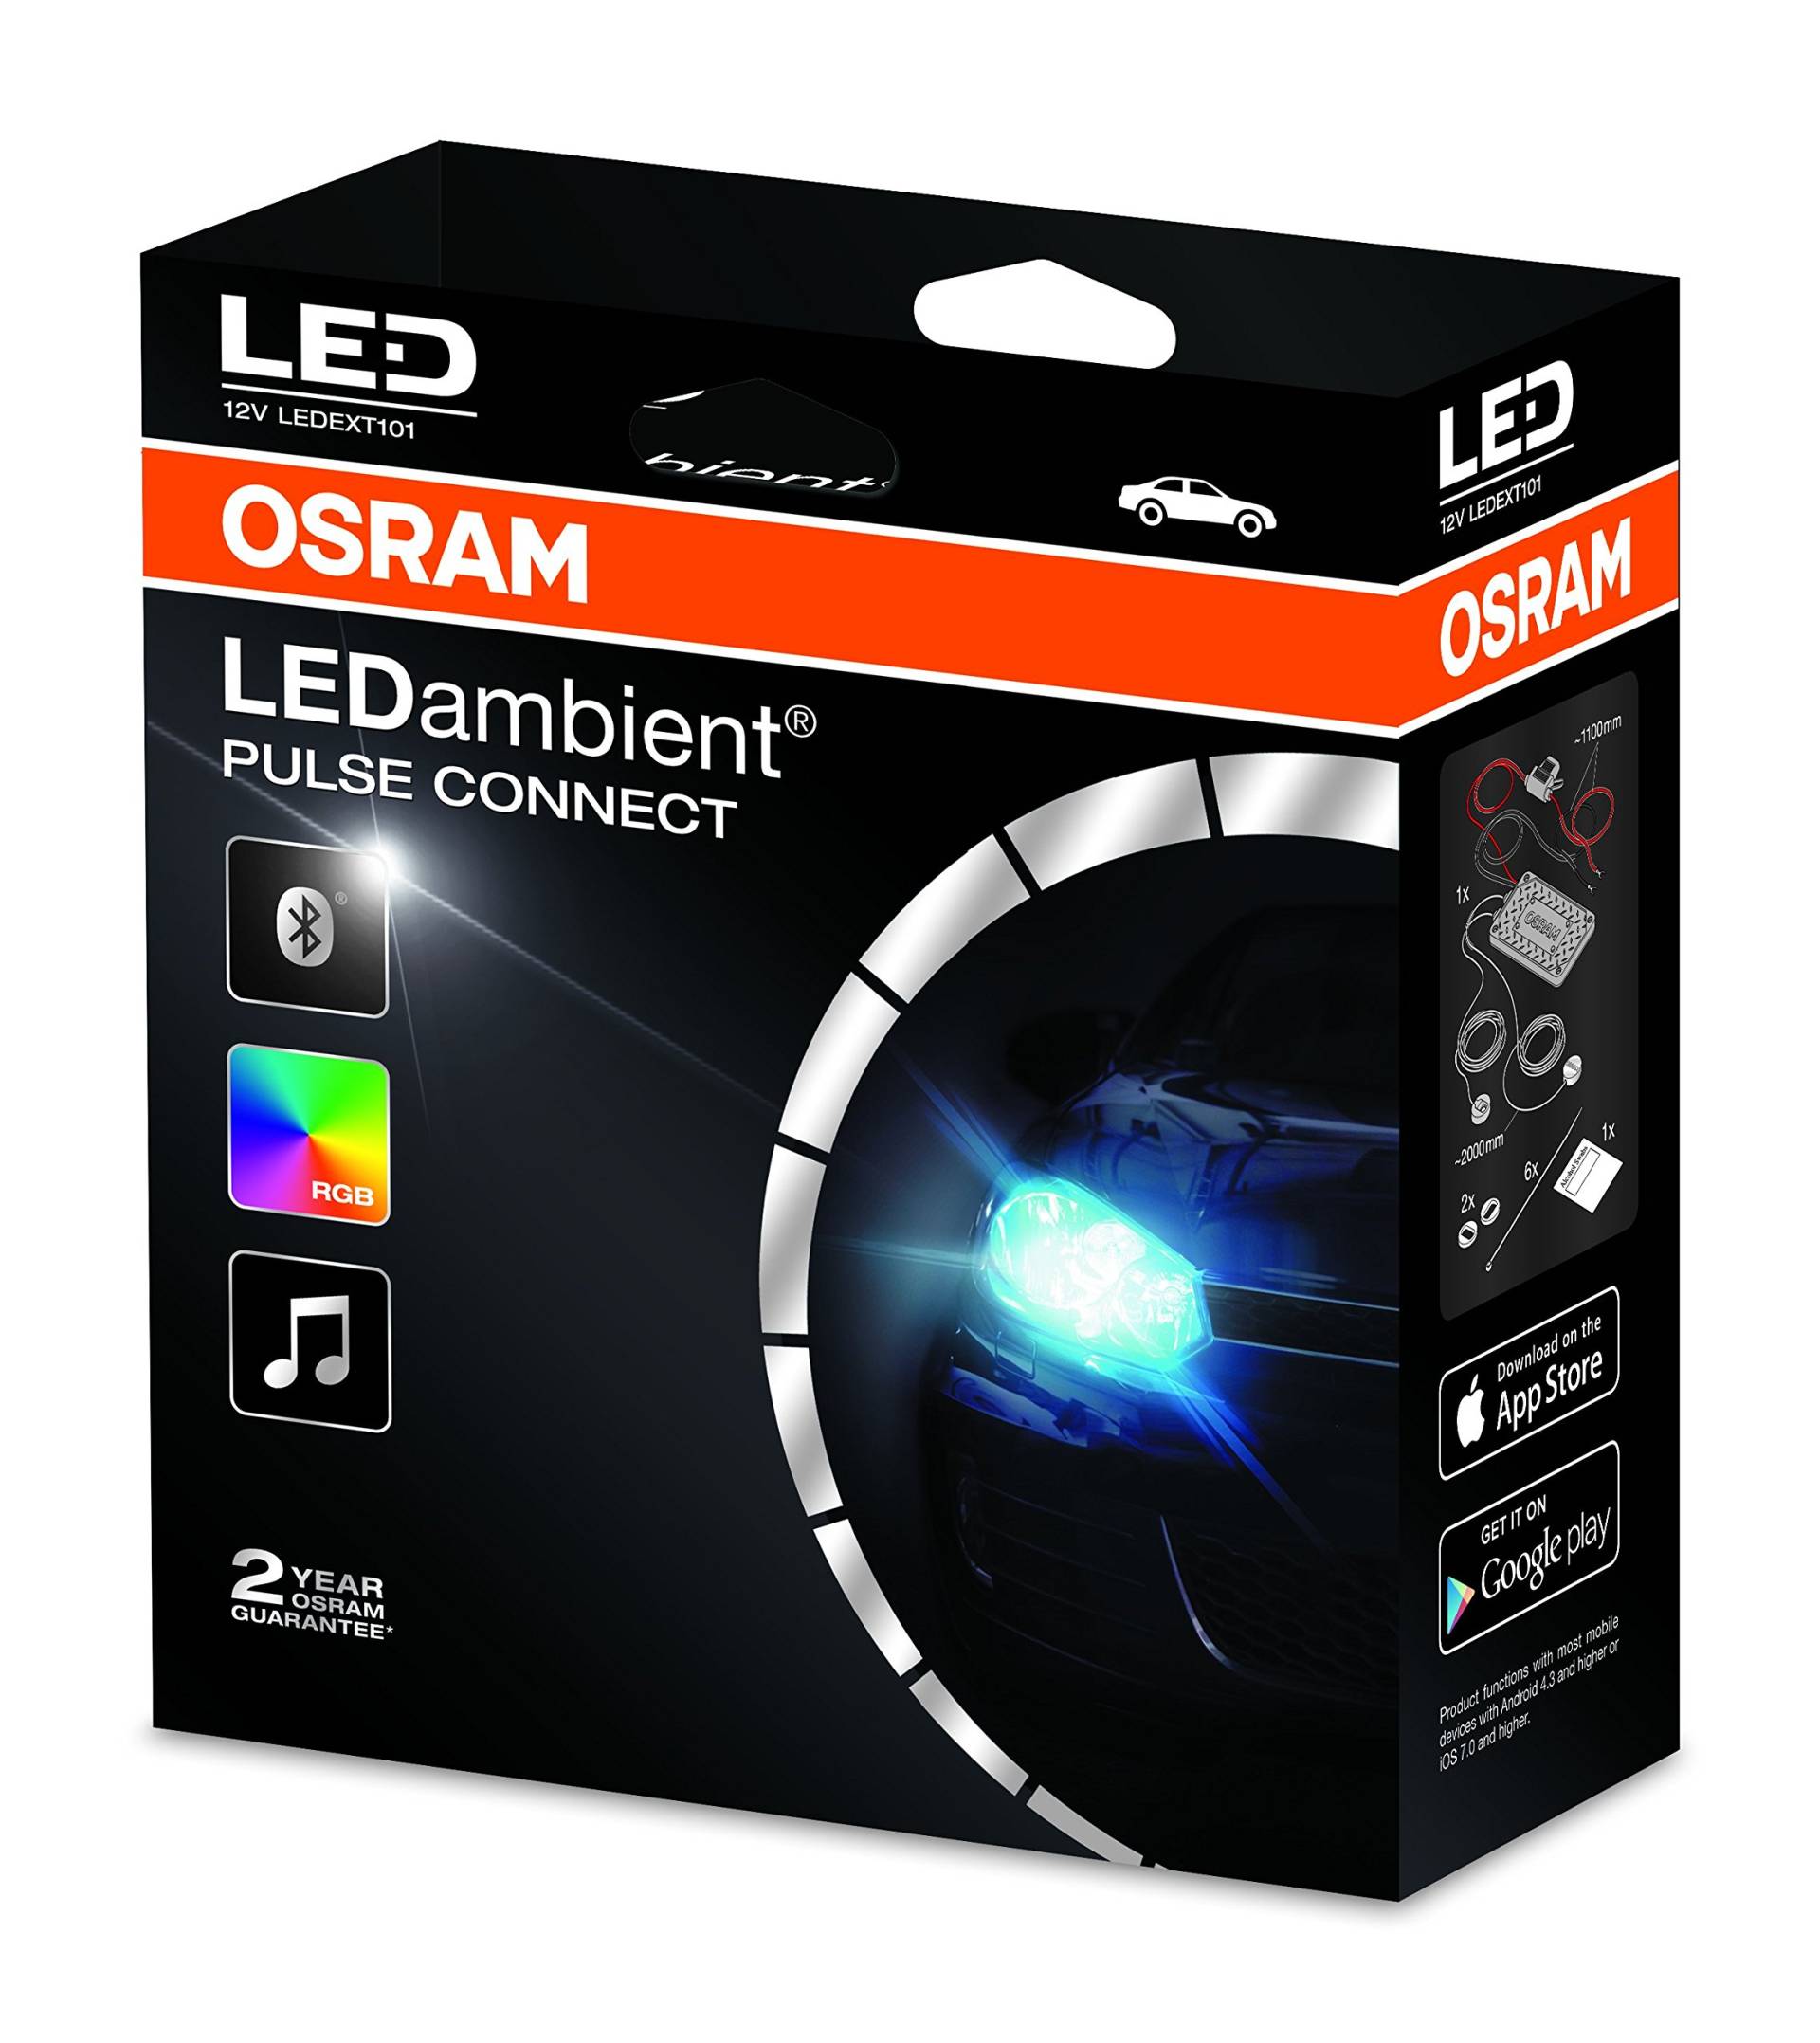 Osram LEDambient PULSE CONNECT, Offroad-Scheinwerferbeleuchtung, LEDEXT101, 12V, Faltschachtel (1 Stück) von Osram